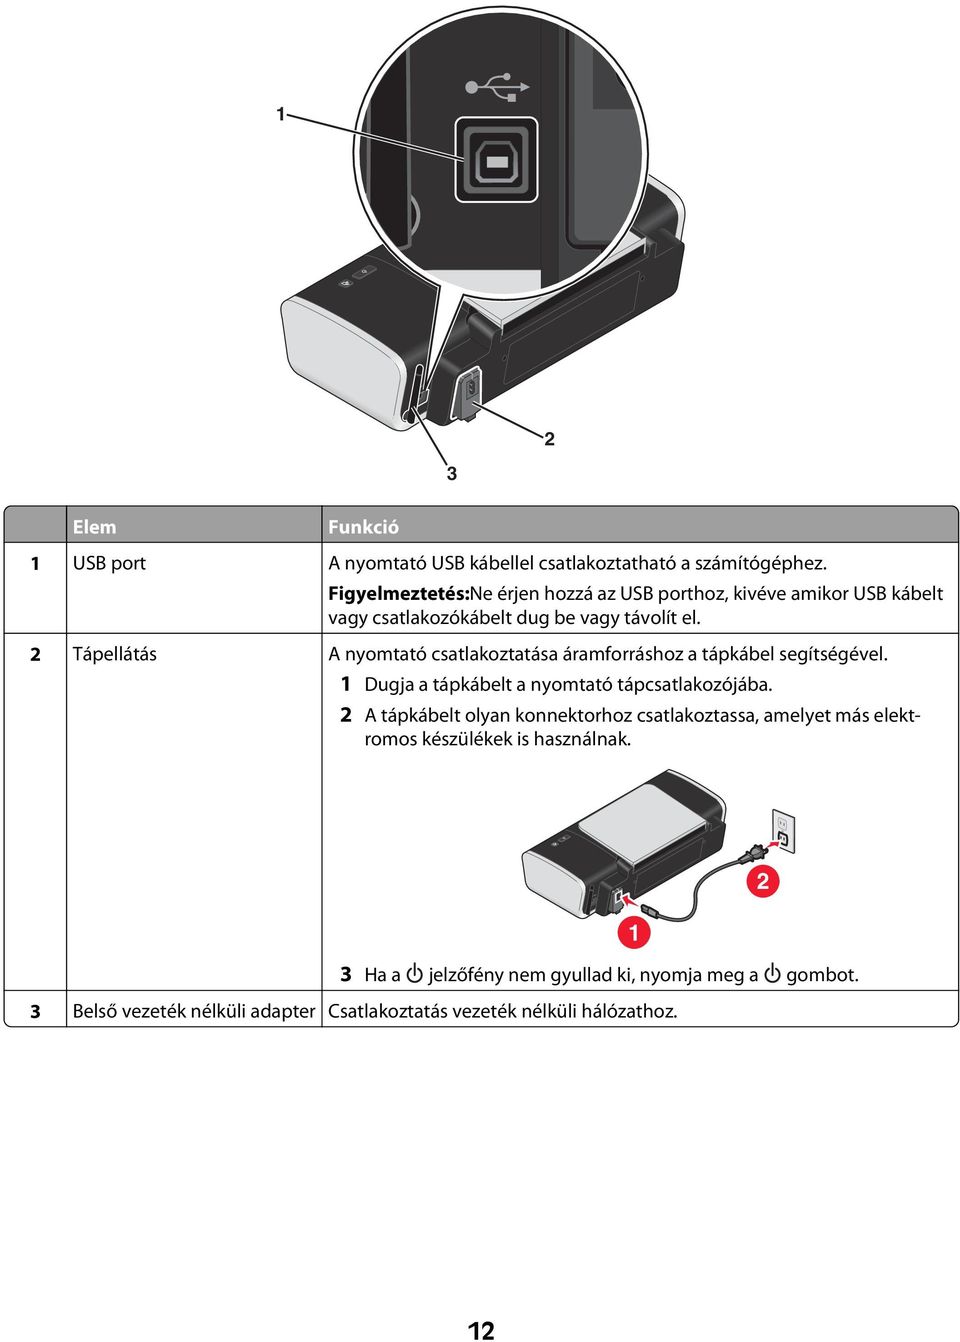 2 Tápellátás A nyomtató csatlakoztatása áramforráshoz a tápkábel segítségével. 1 Dugja a tápkábelt a nyomtató tápcsatlakozójába.